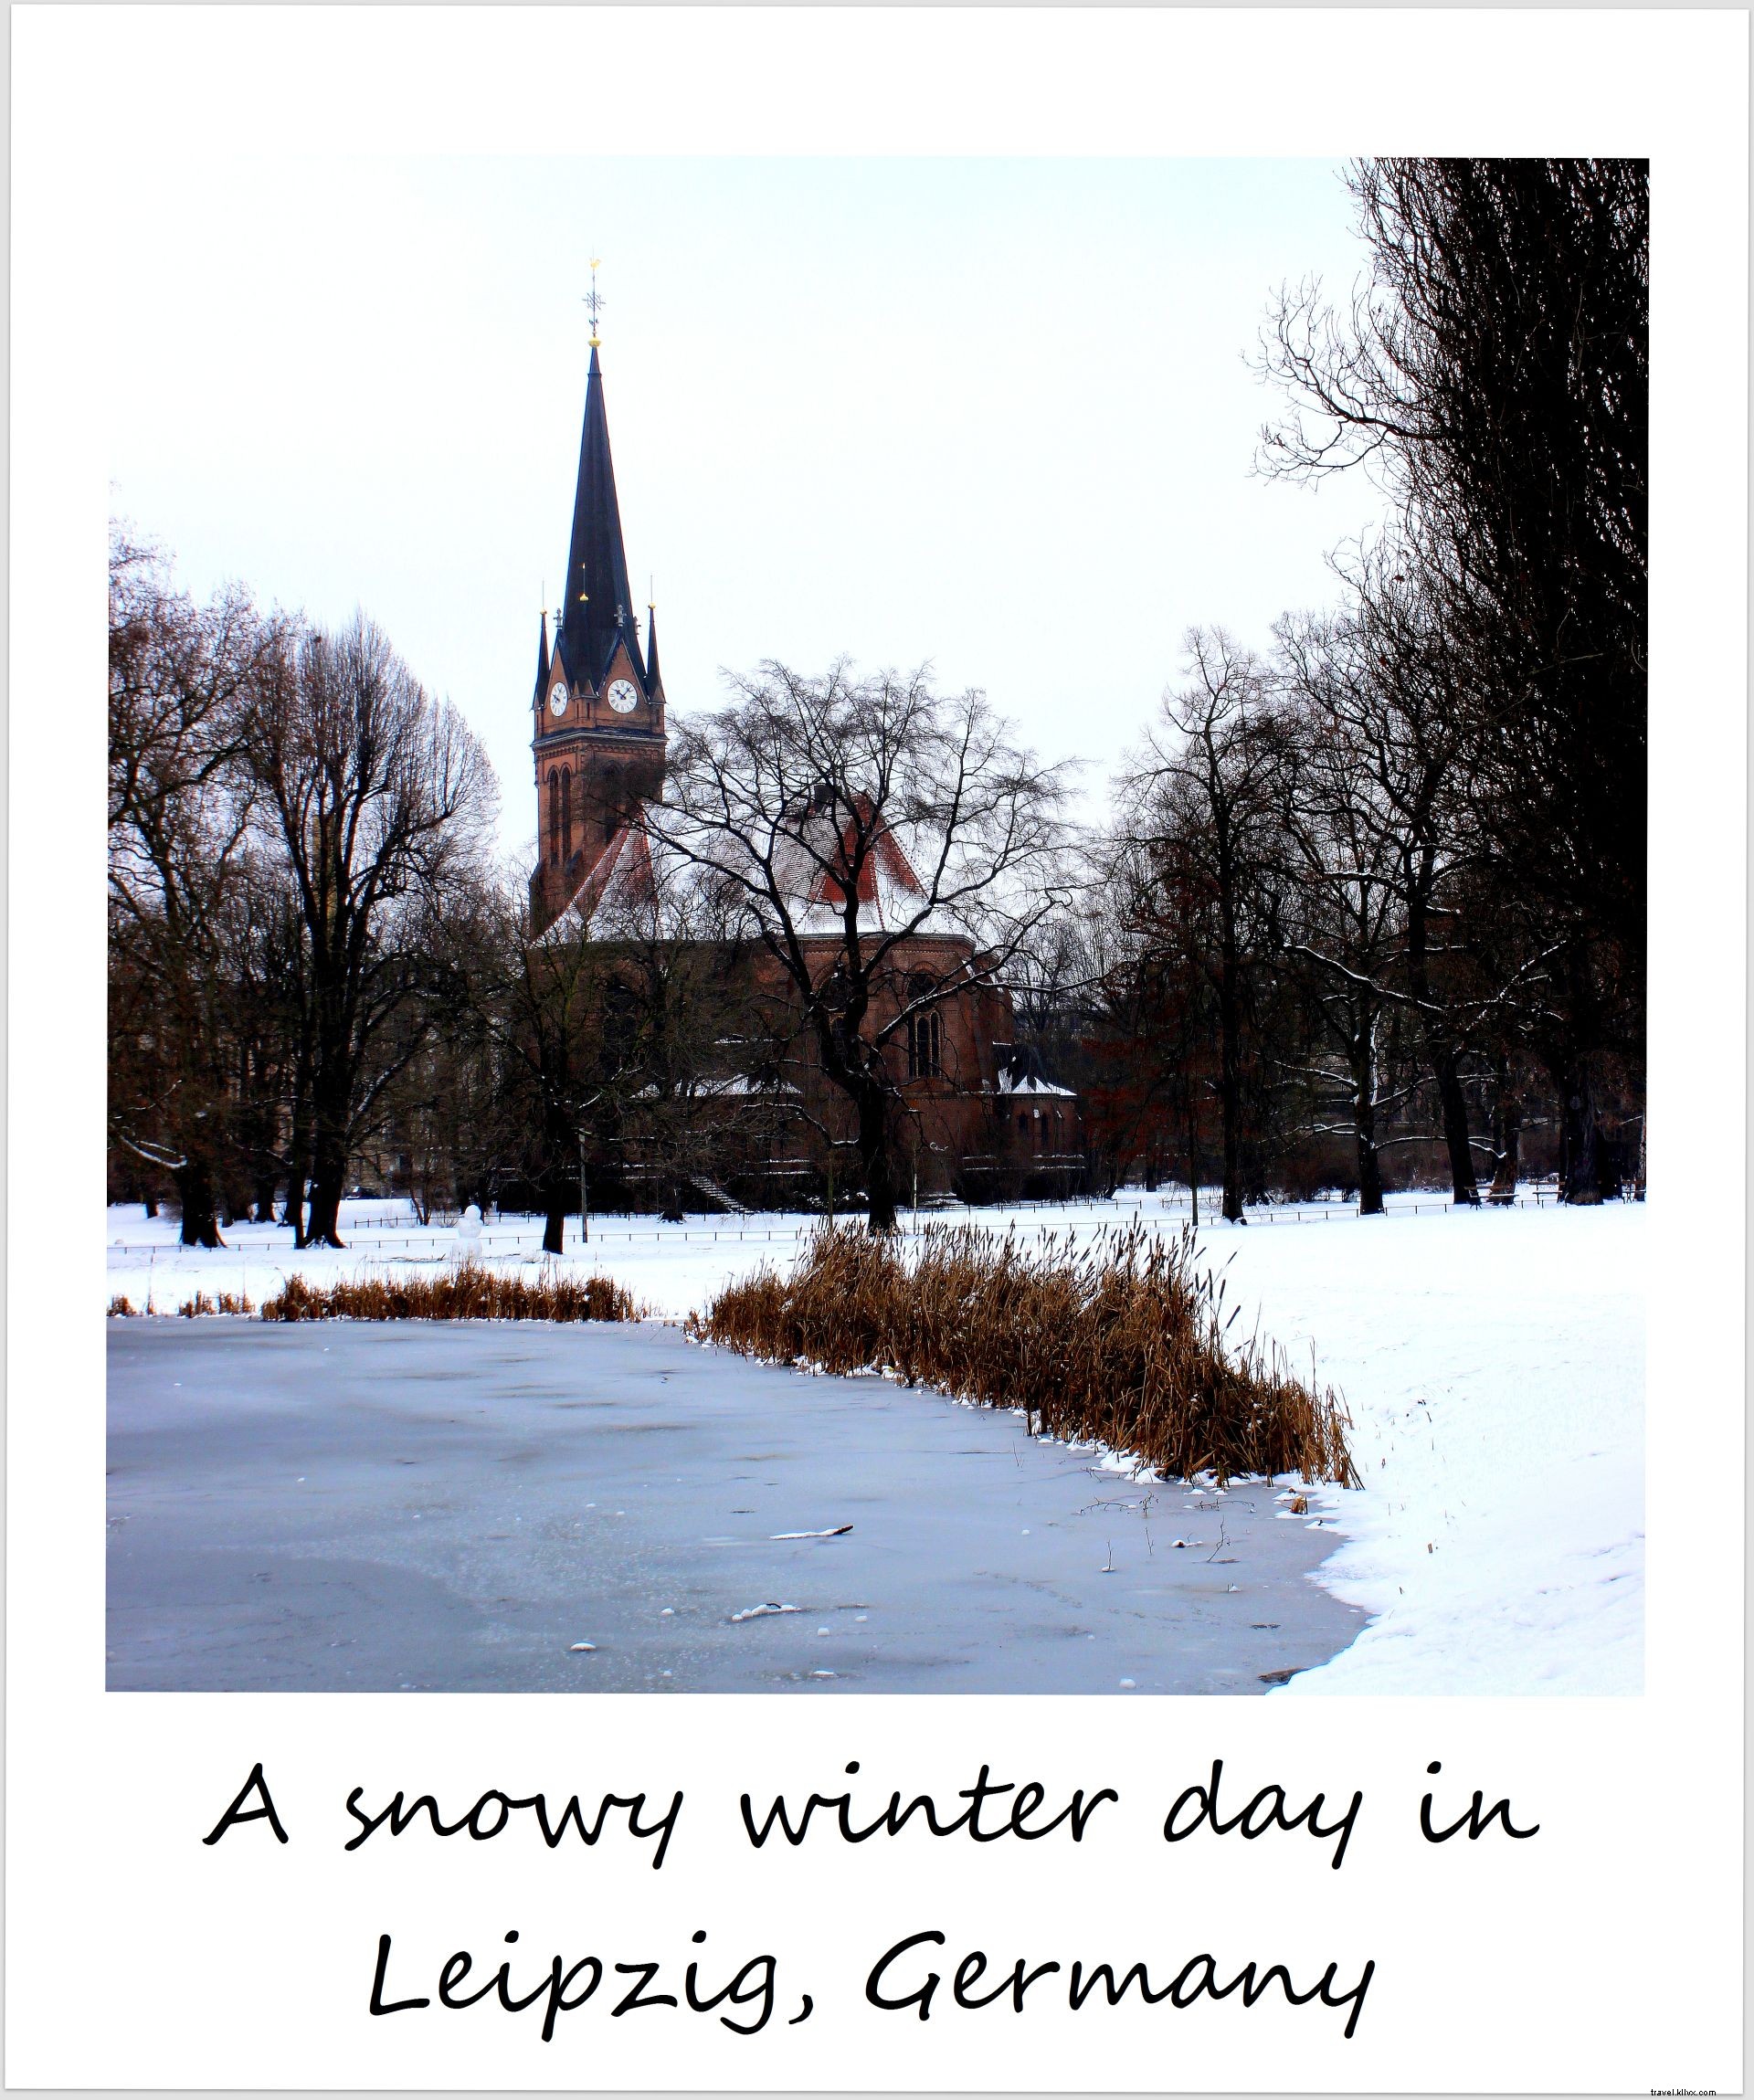 Polaroid minggu ini:Hari musim dingin bersalju di Jerman